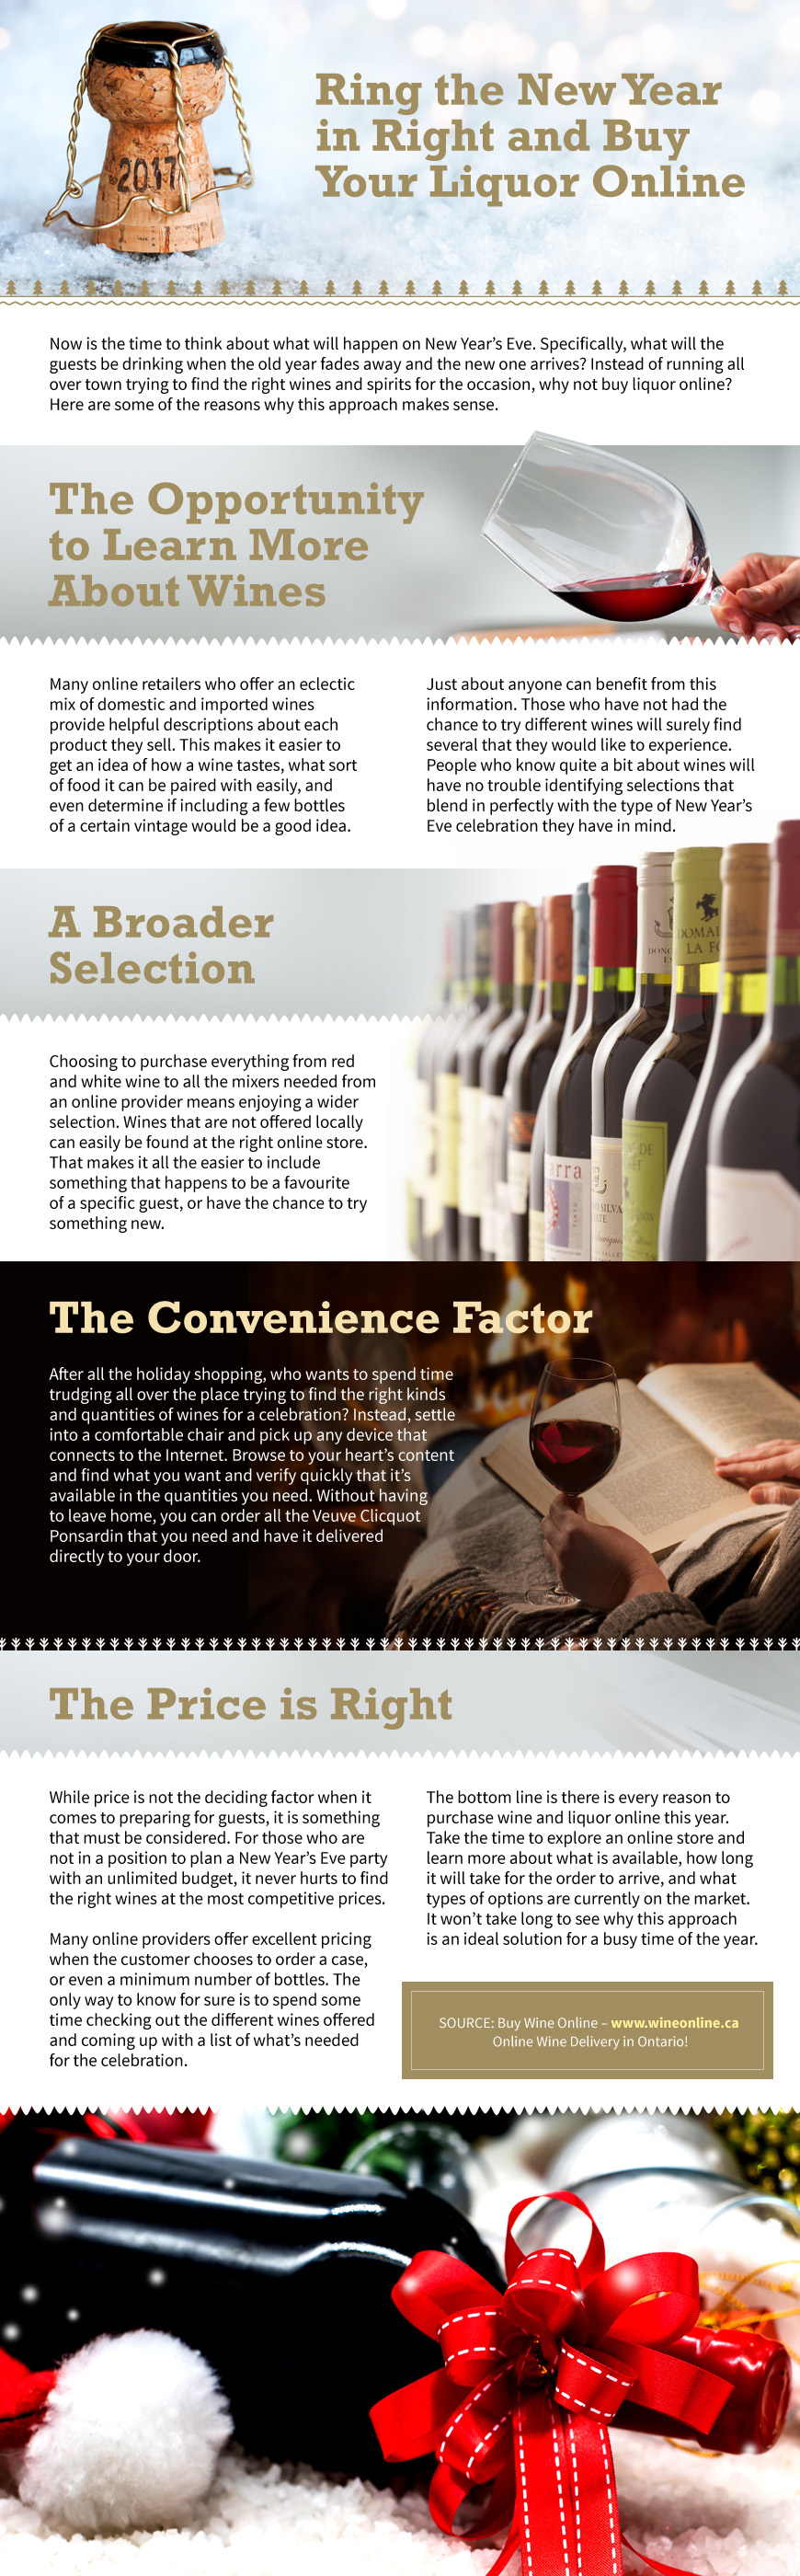 online liquor infographic